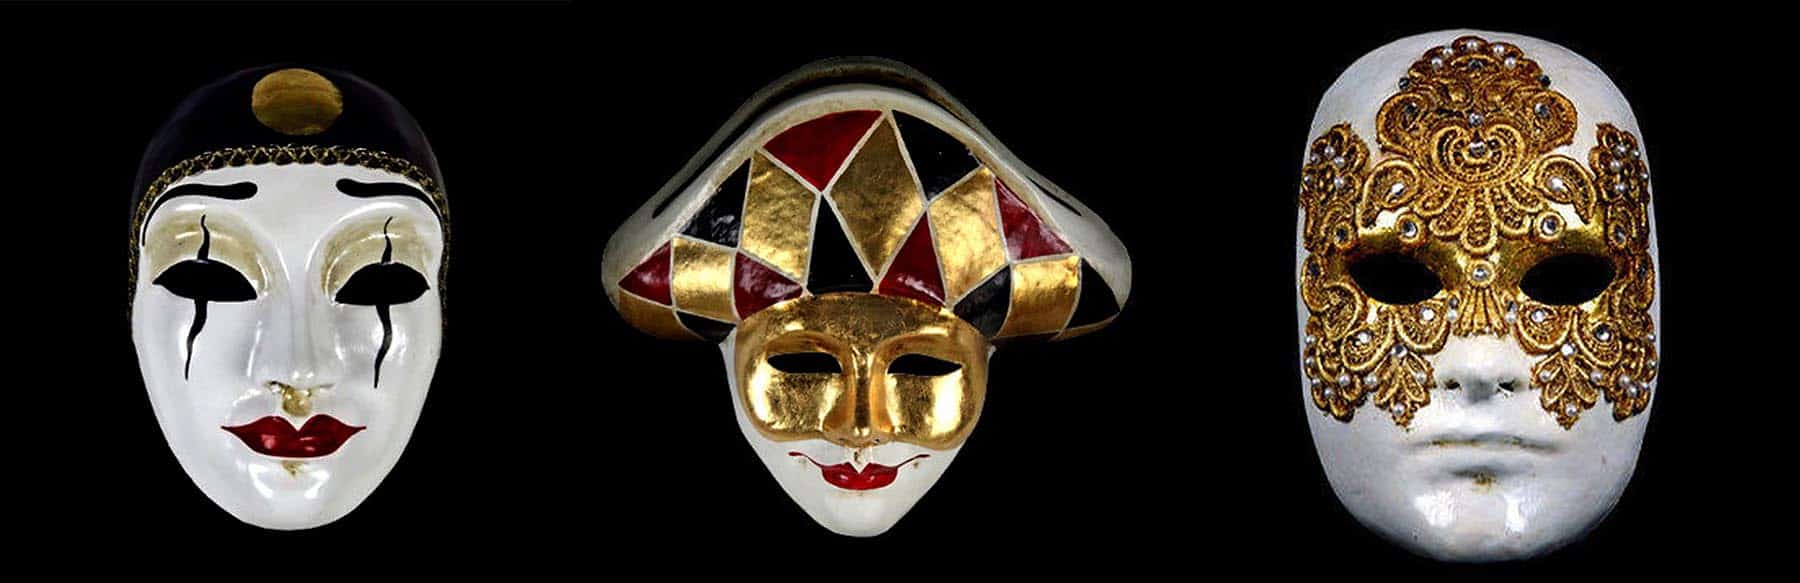 Orkaan Tien jaar ondanks History of Venetian Masks - Images of Venice